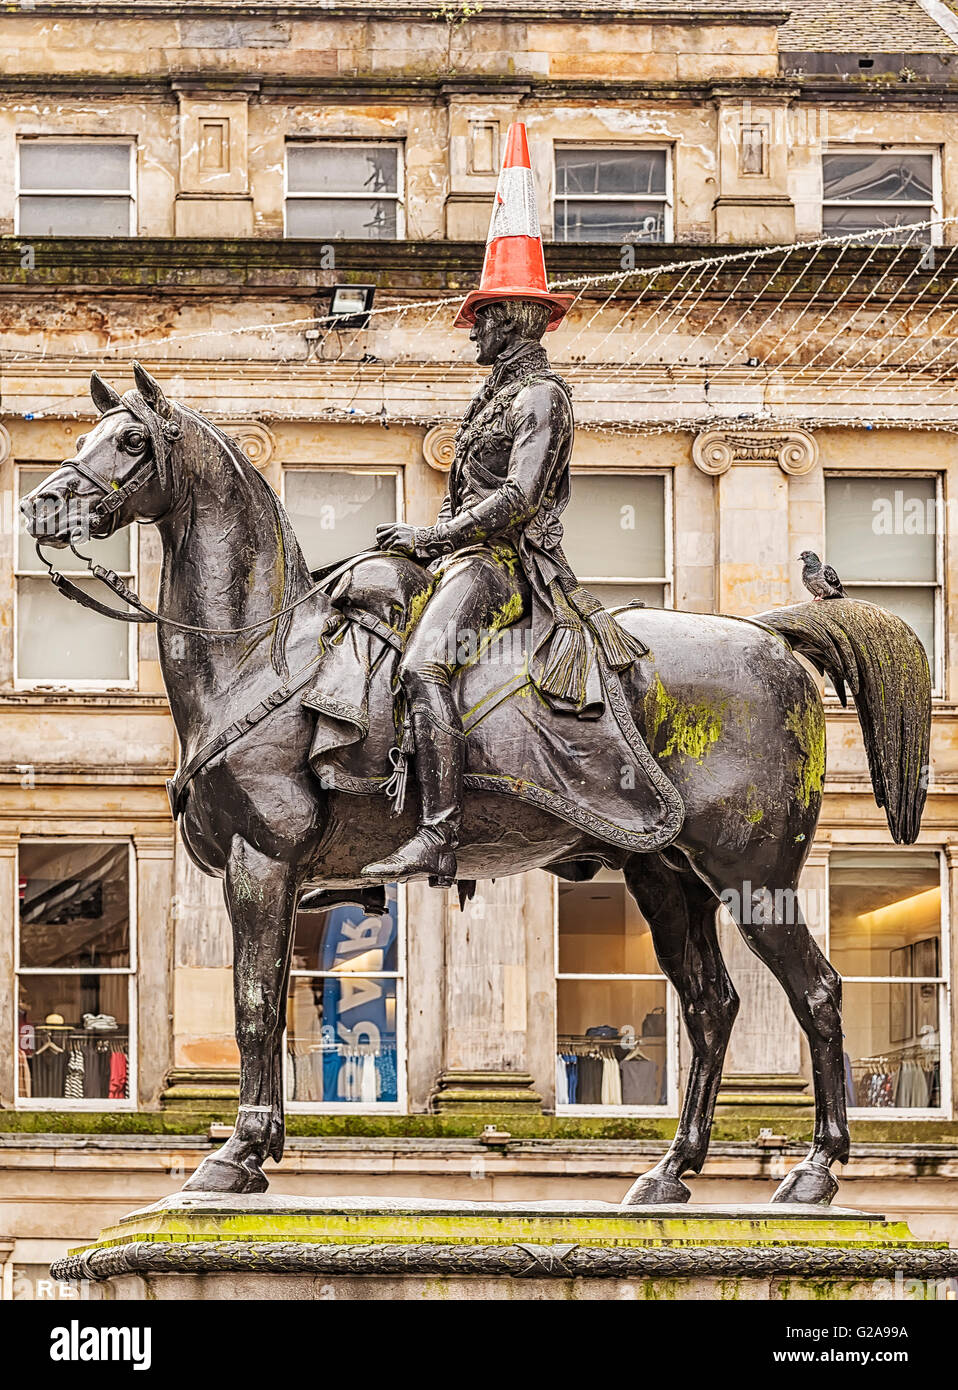 La statue du duc de Wellington, à Glasgow, en Écosse avec son cône de trafic habituel sur sa tête. Banque D'Images